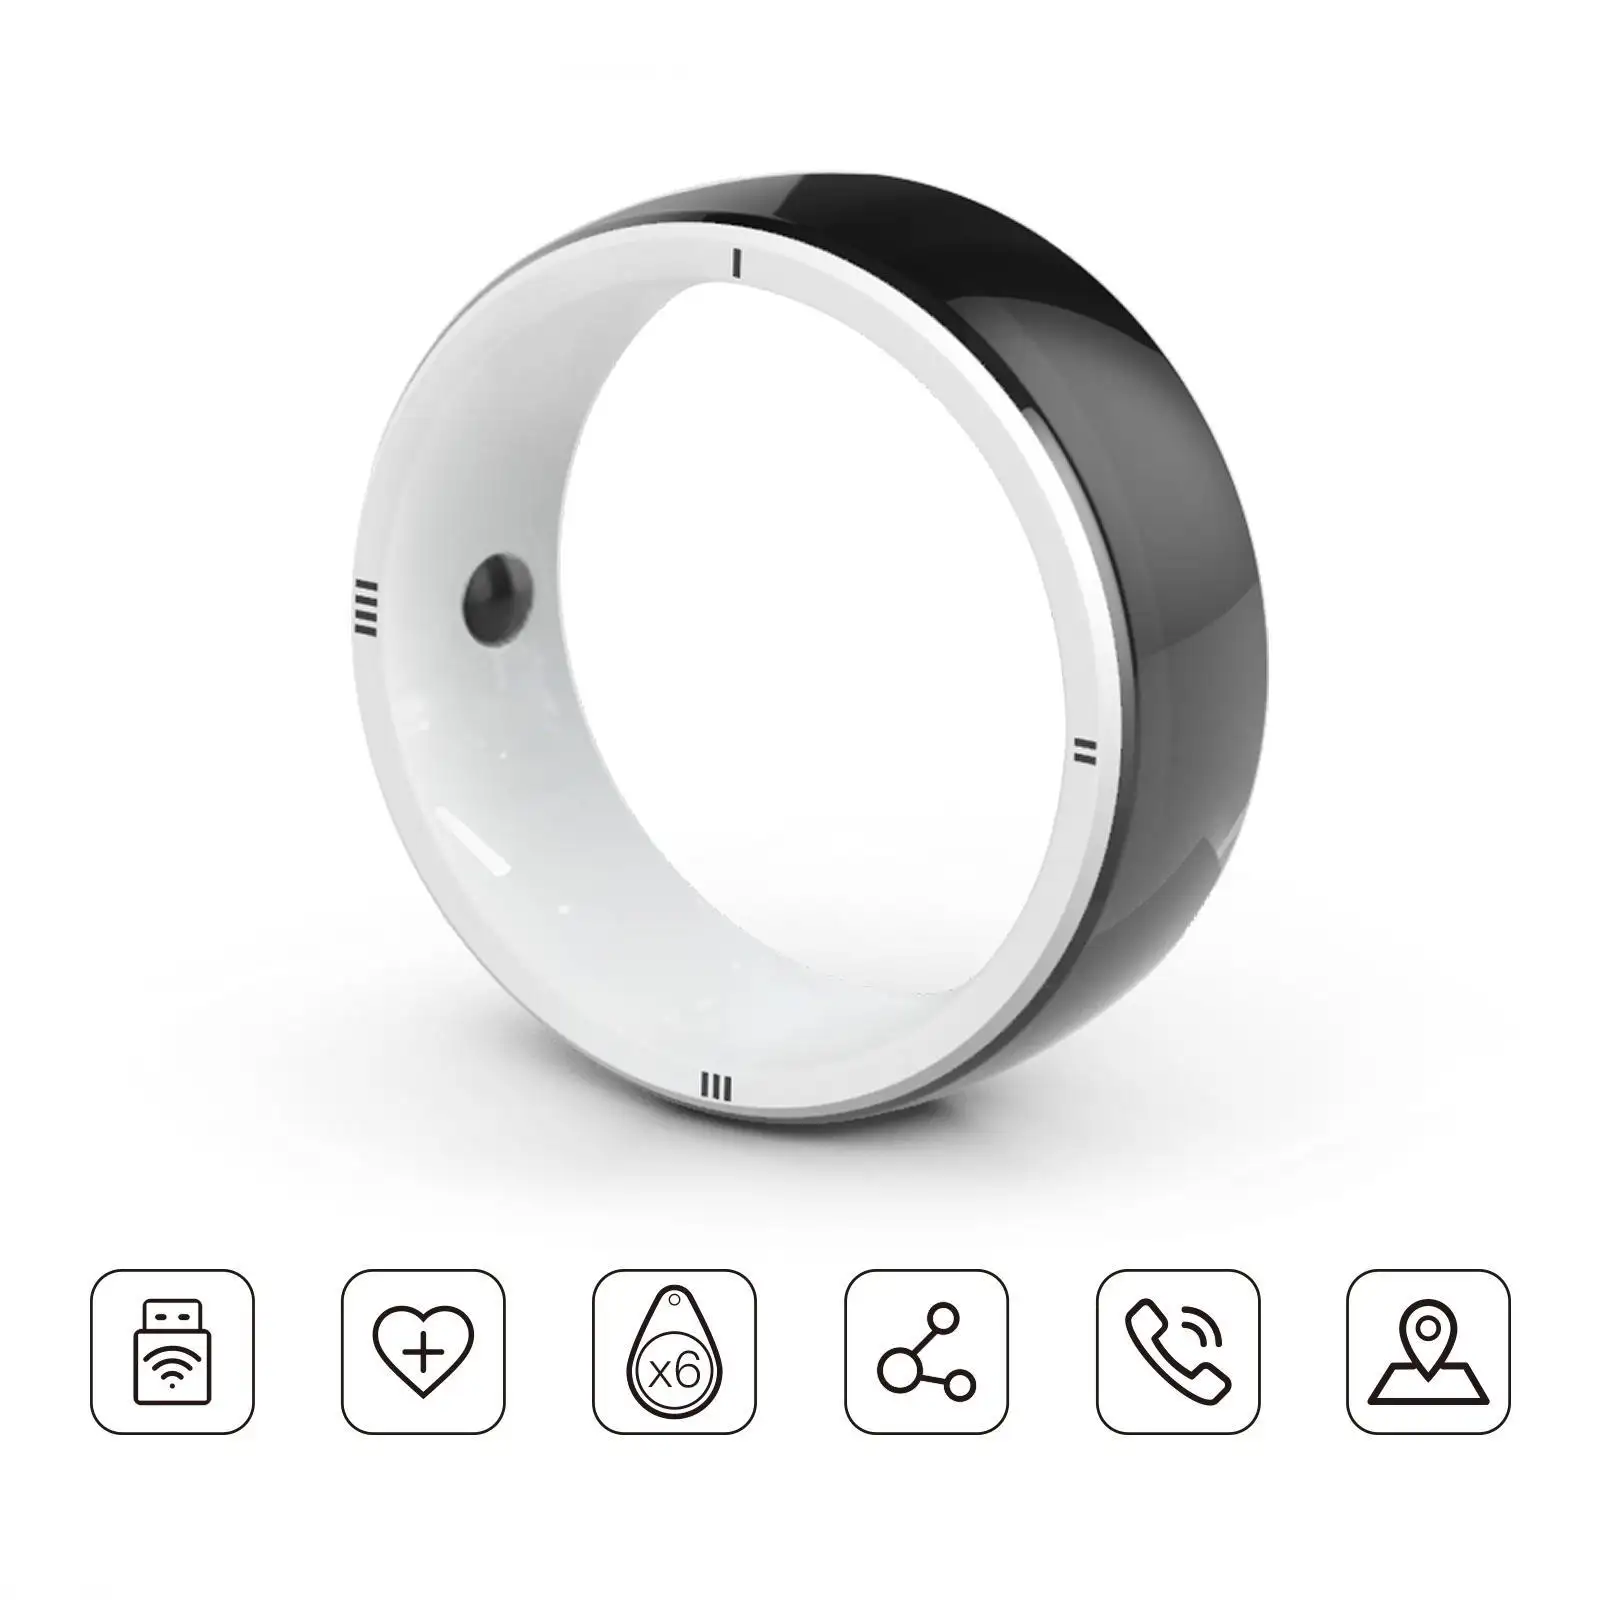 JAKCOM R5 Smart Ring New Smart Ring Super valeur que grtdhx mp3 pouces disquette 7 plus remplacement de l'écran blanc sur le cou